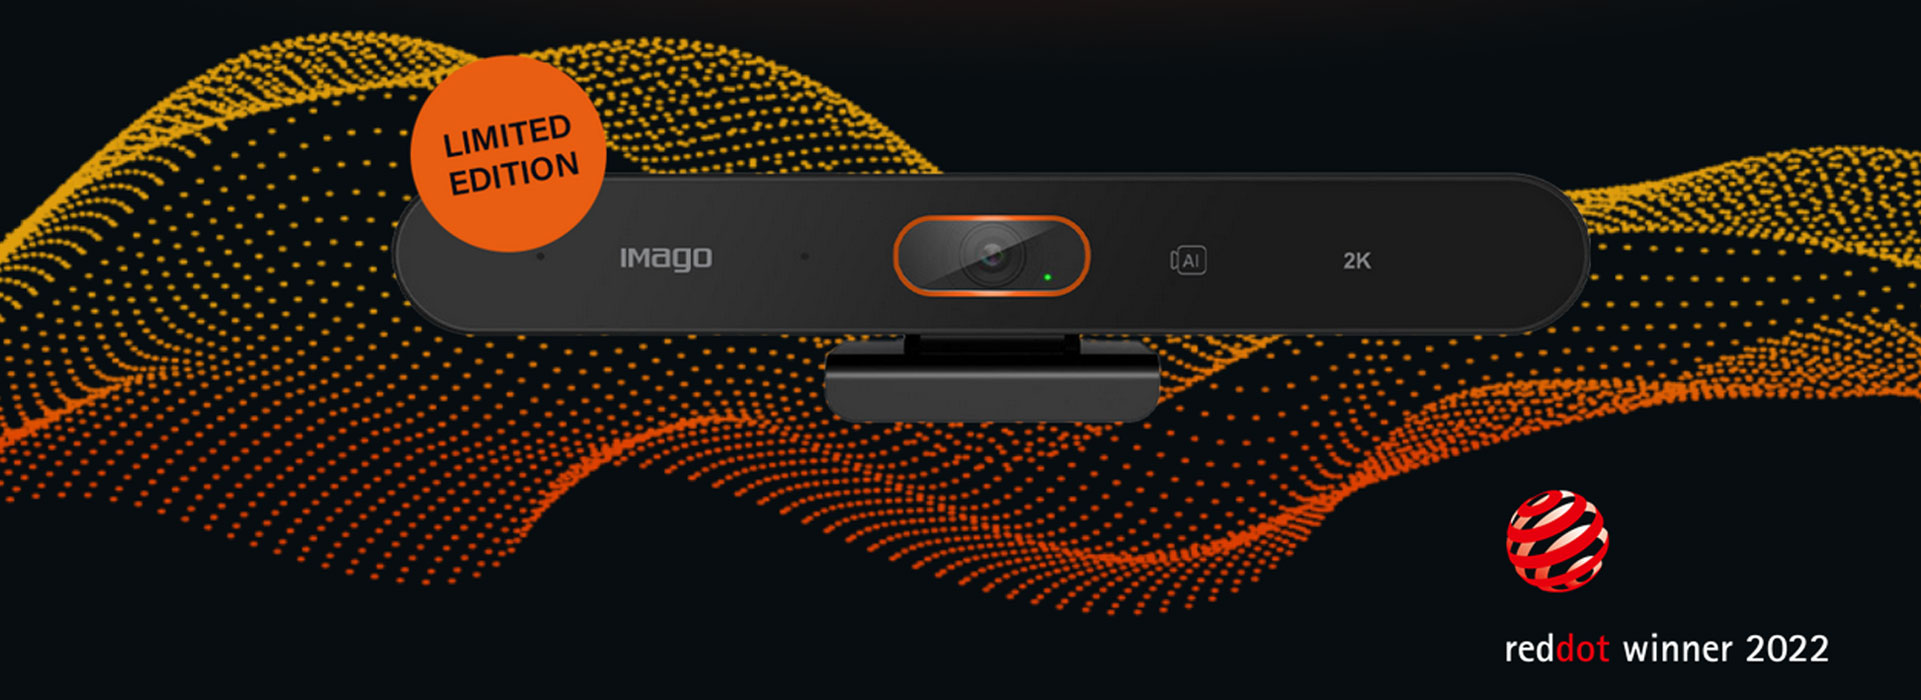 Imago - Reddot Winner 2022